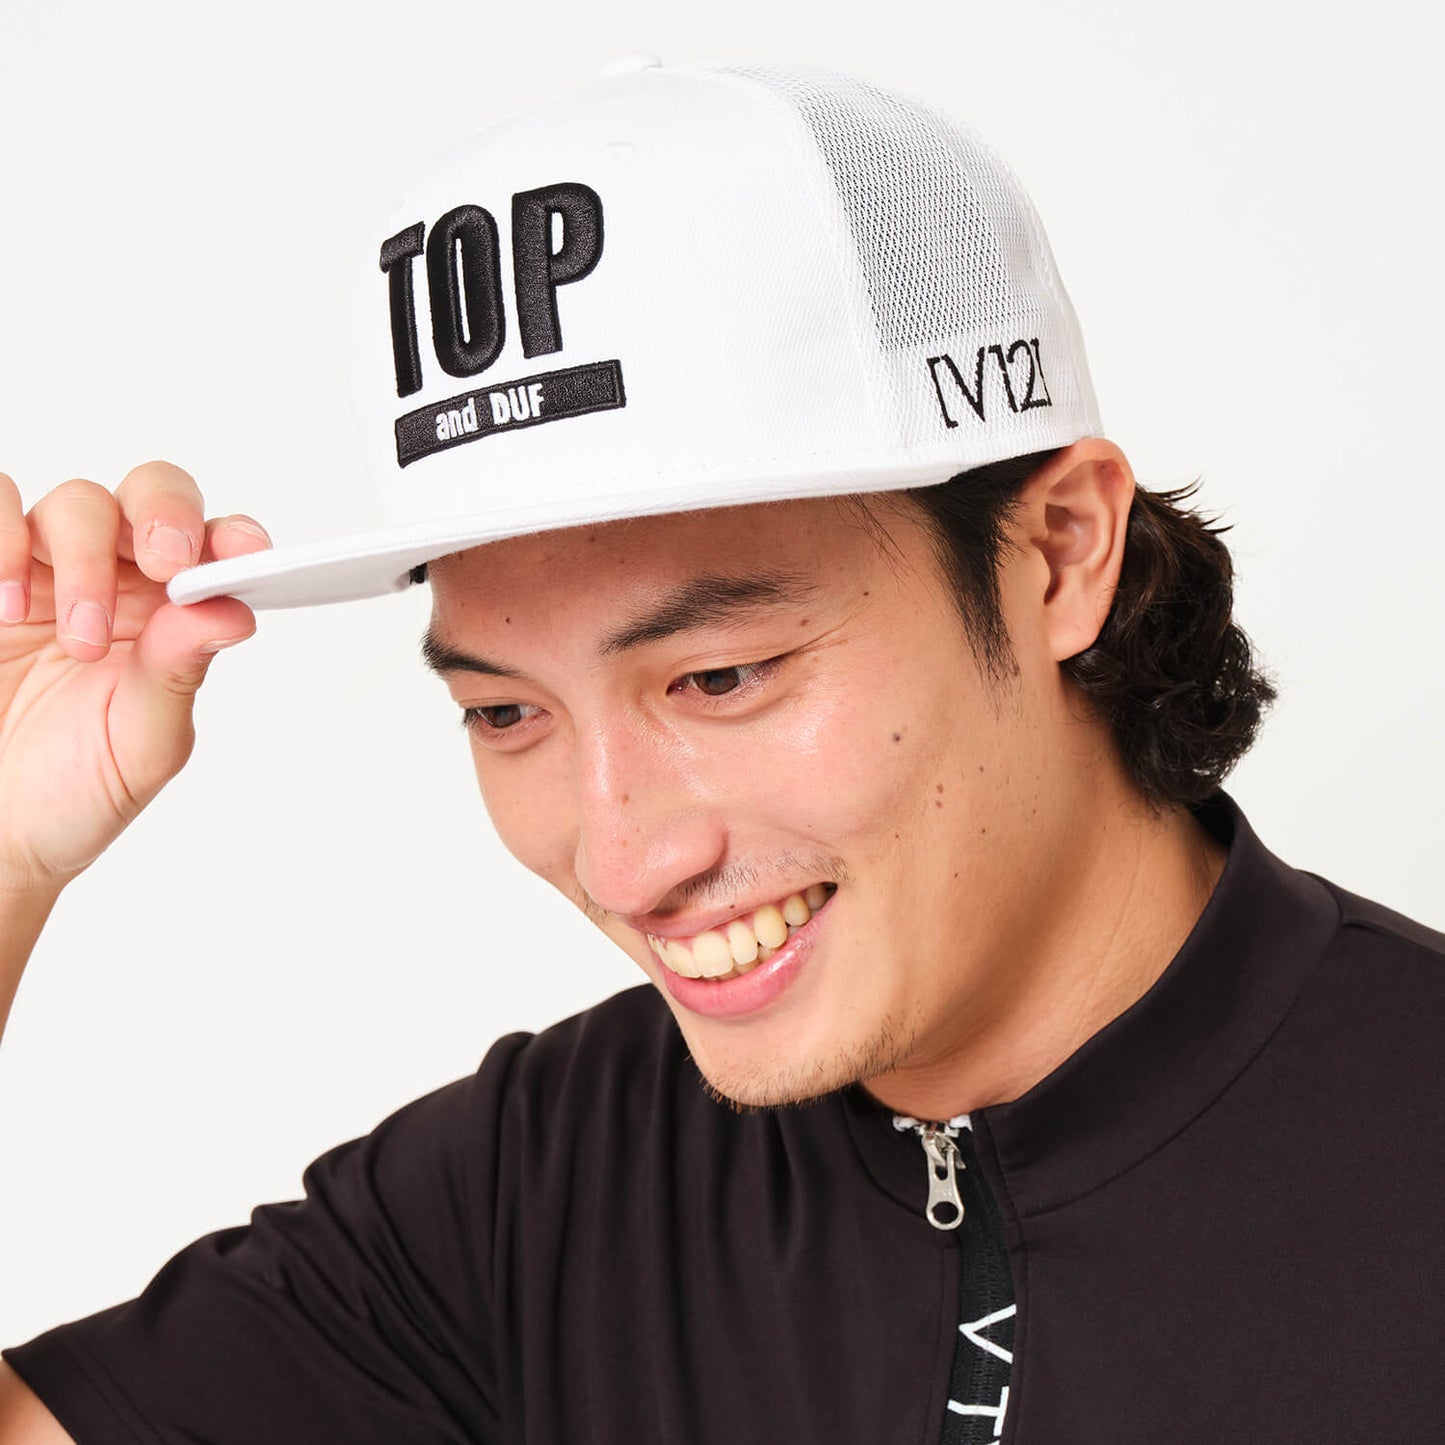 TOP CAP